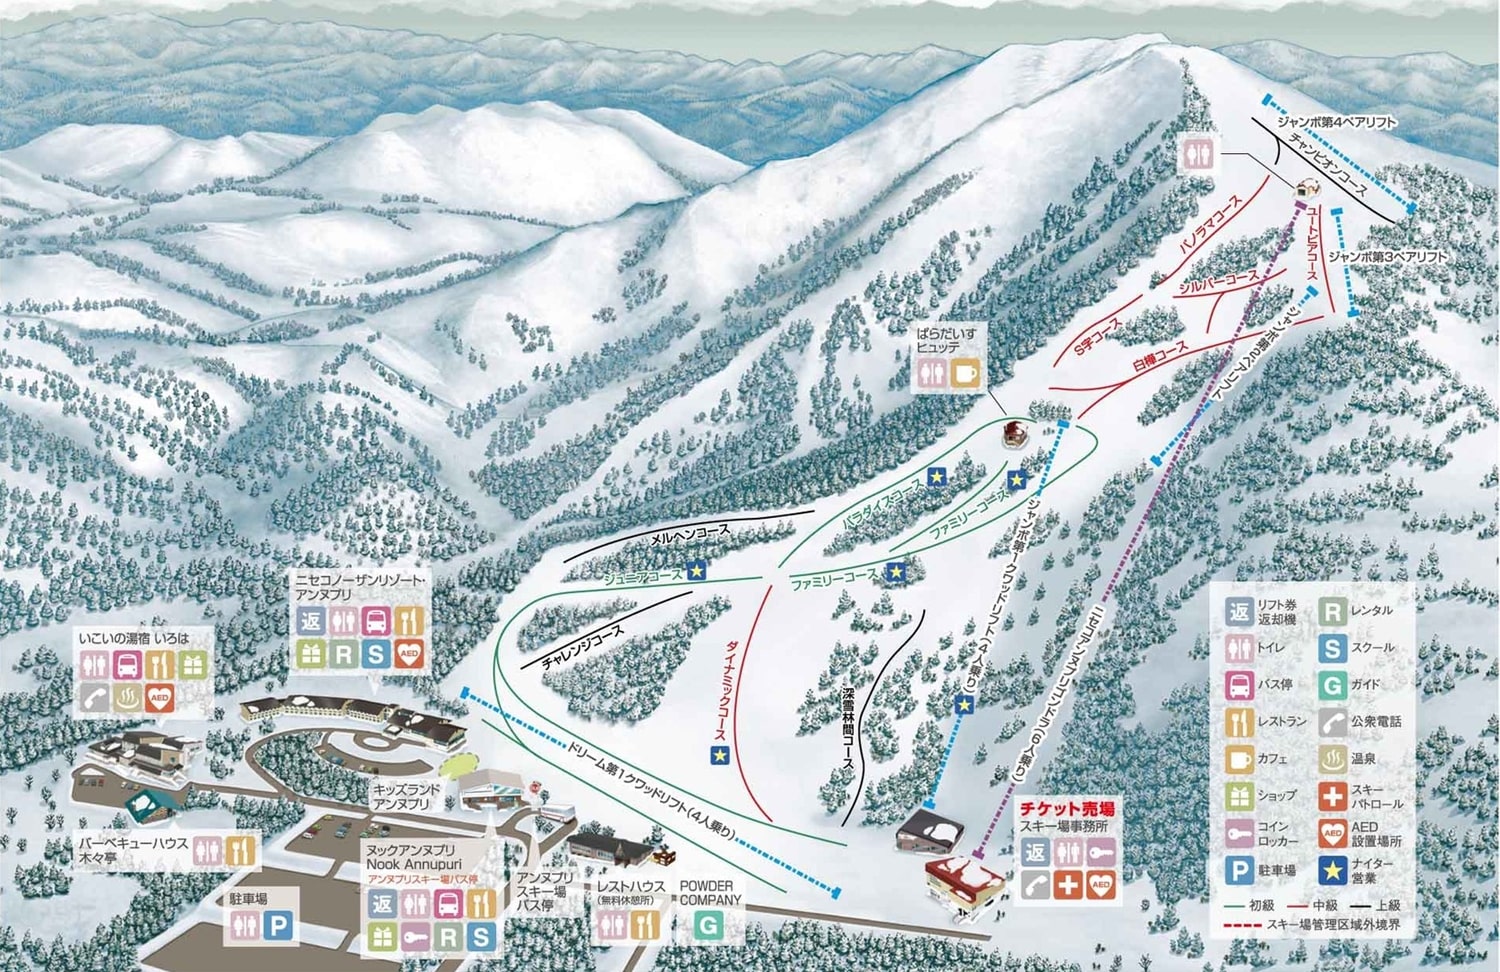 ニセコアンヌプリ国際スキー場 コースマップ　ゲート　積雪　天気　リフト券割引　ホテル